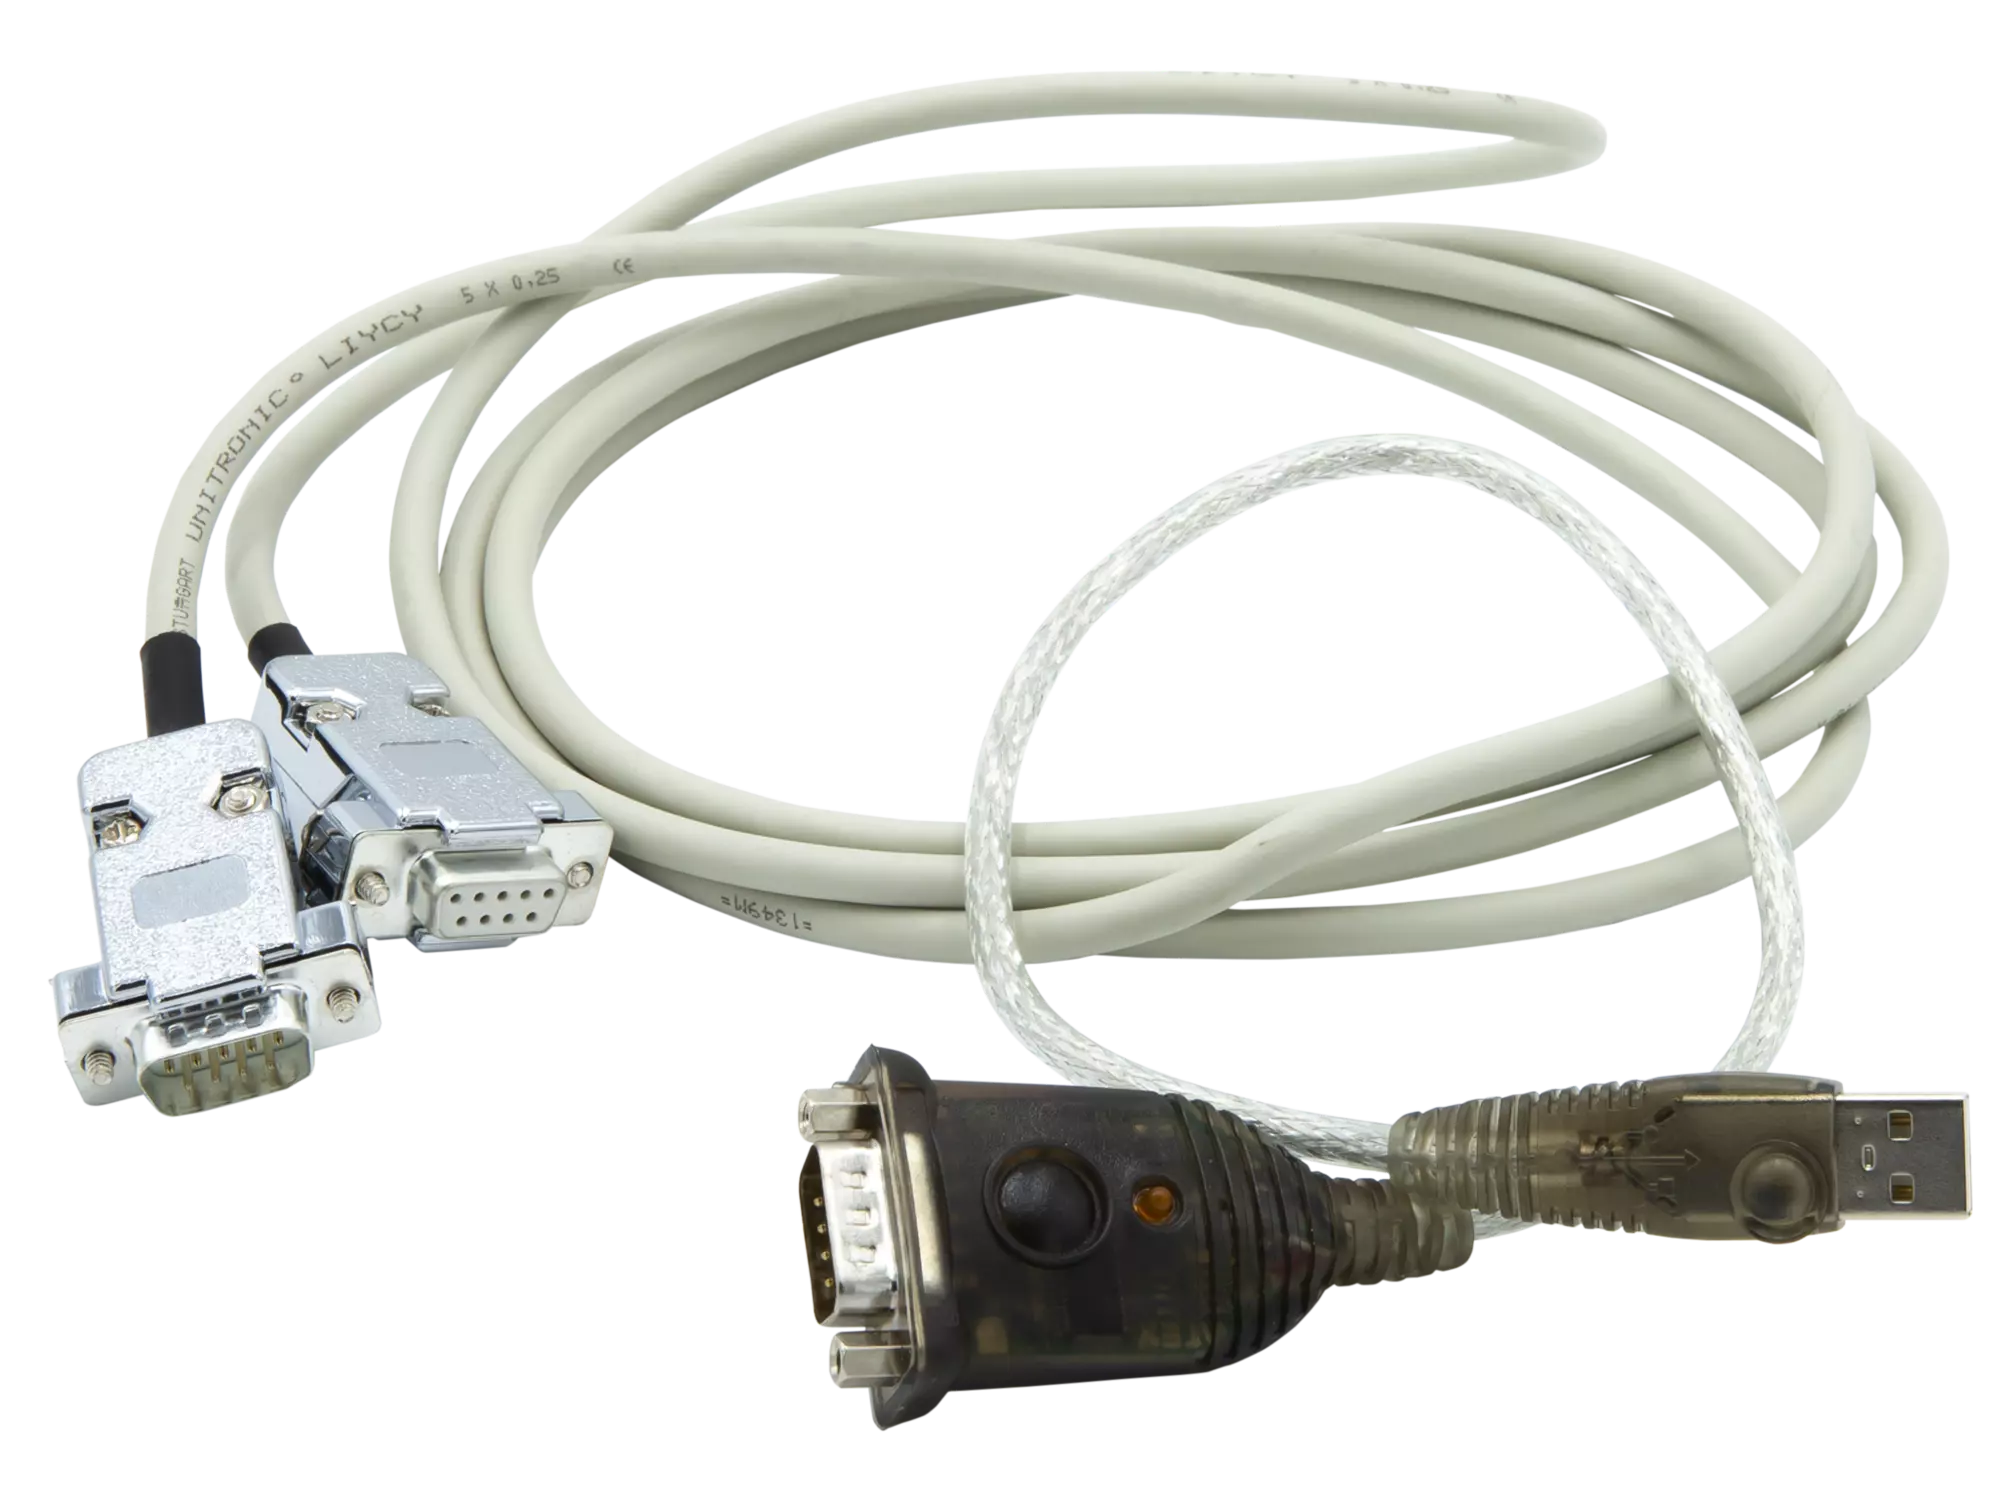 Câble de connexion RS-1